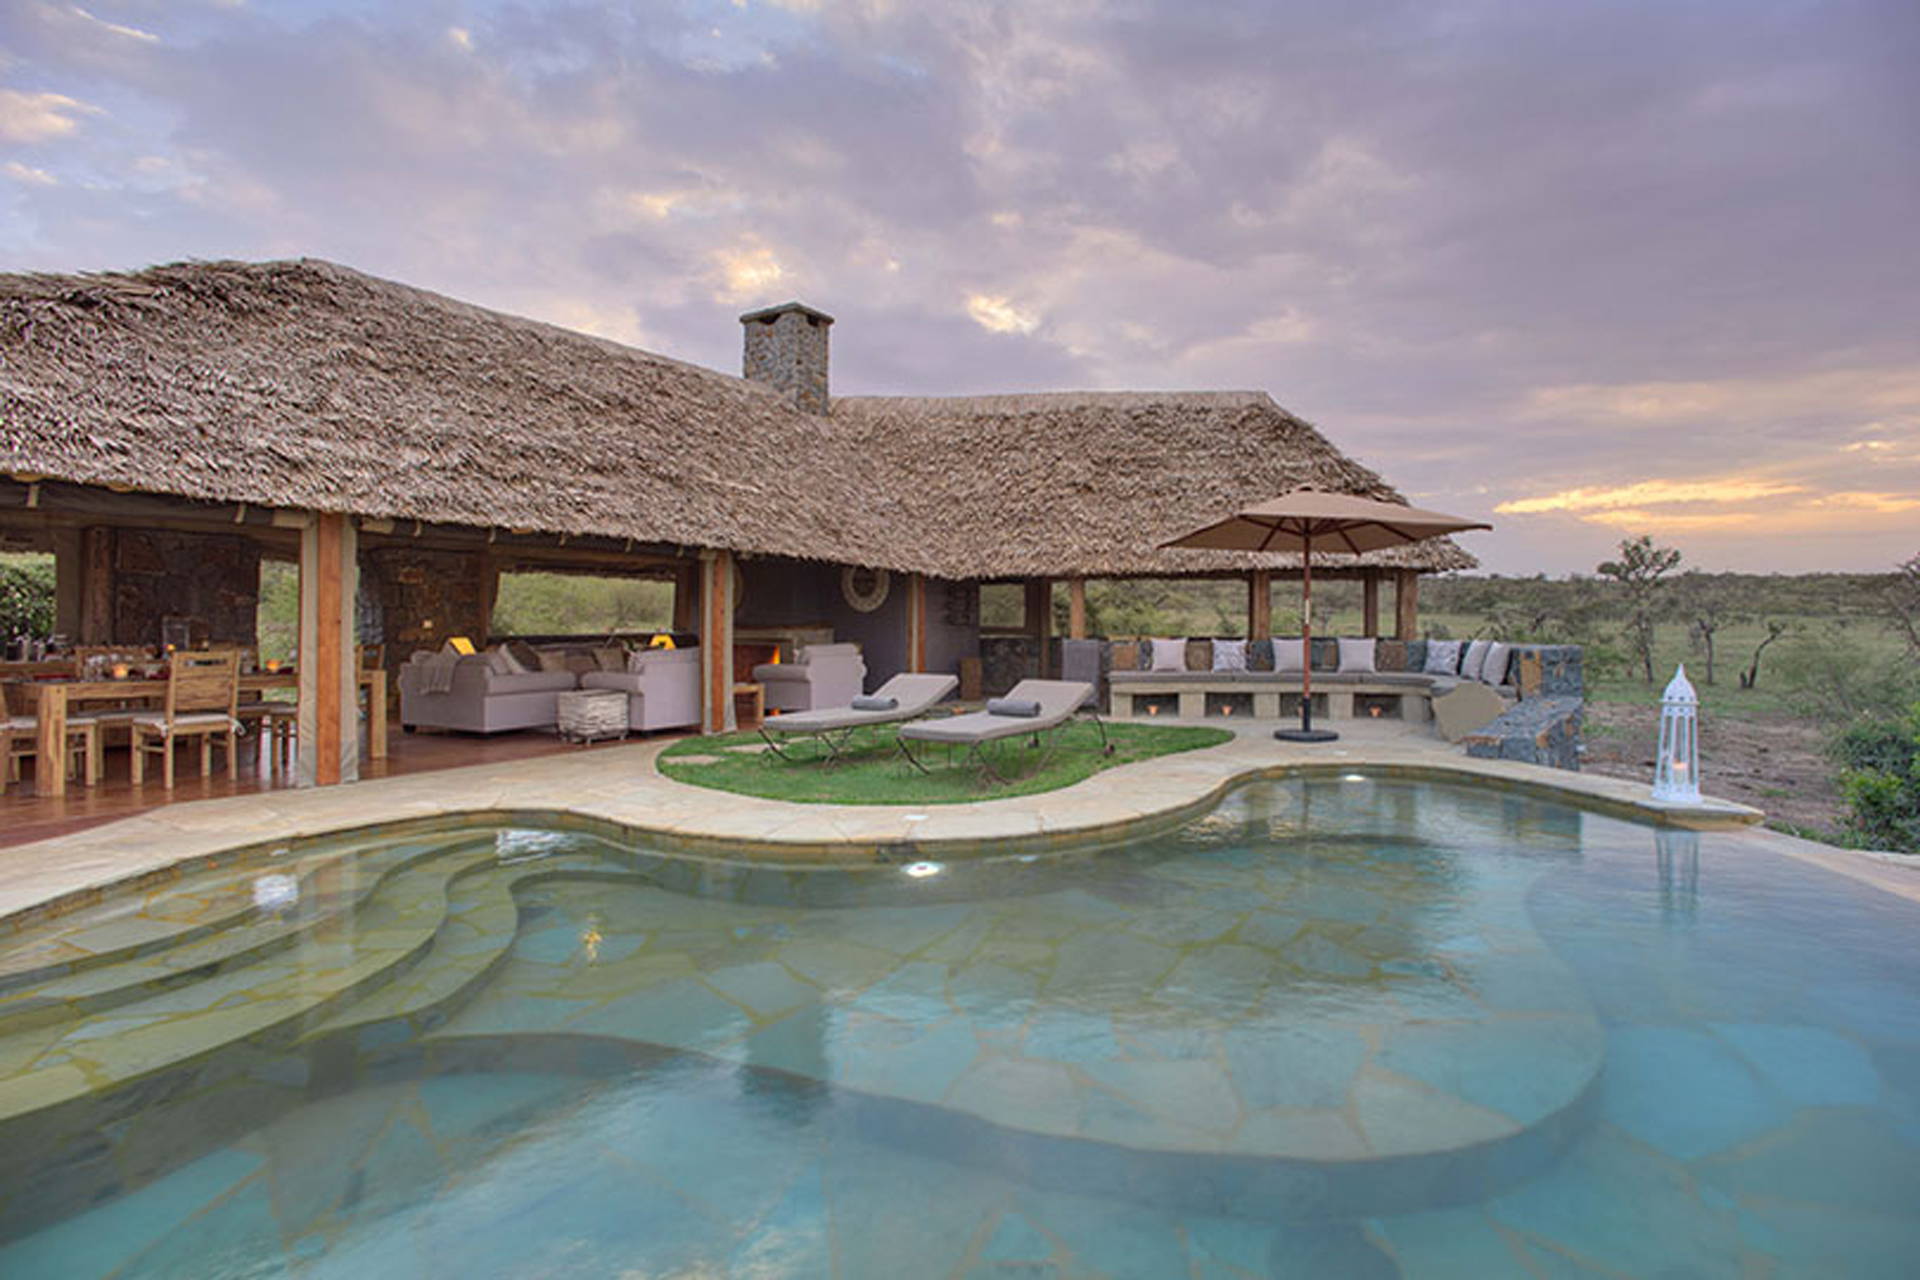 Swimming pools in the Masai Mara